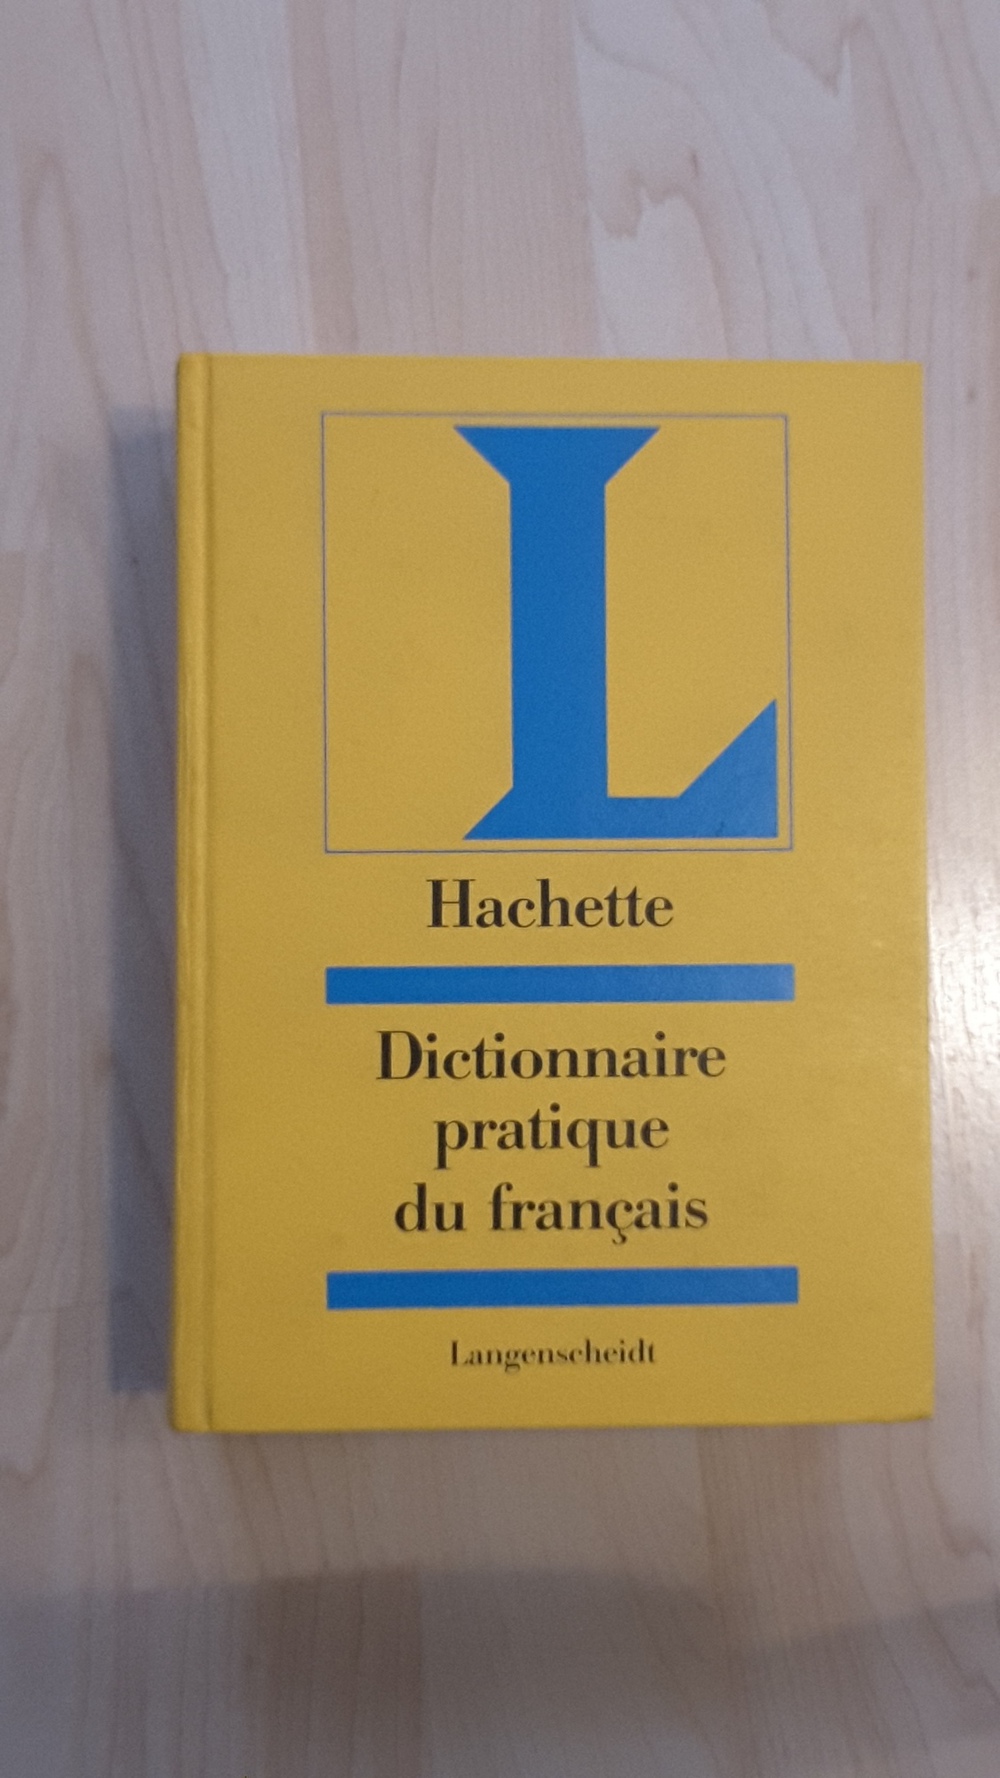 Einsprachiges Französisch Wörterbuch Langenscheidt, 1248 Seiten